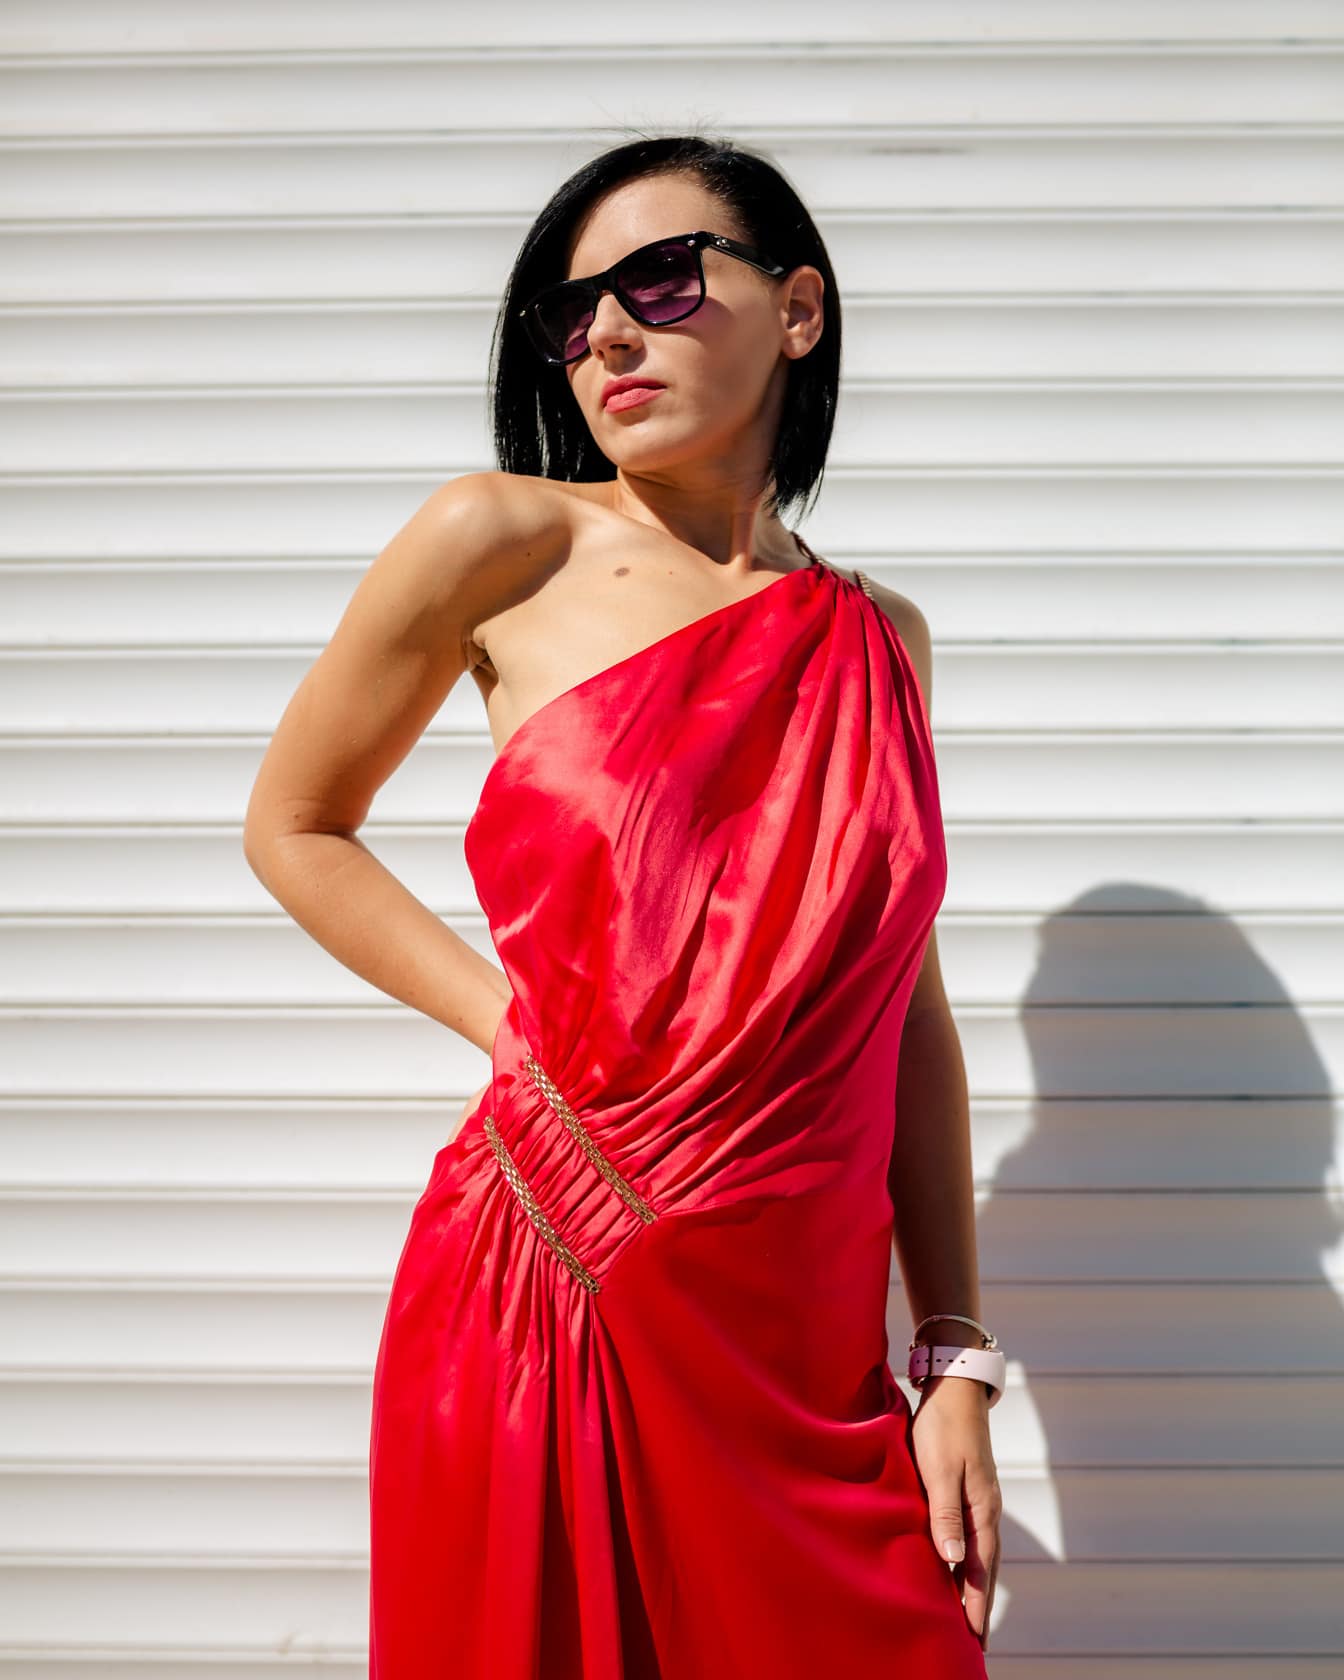 Portræt af flot slank kvinde, der poserer i en rød silkeagtig kjole